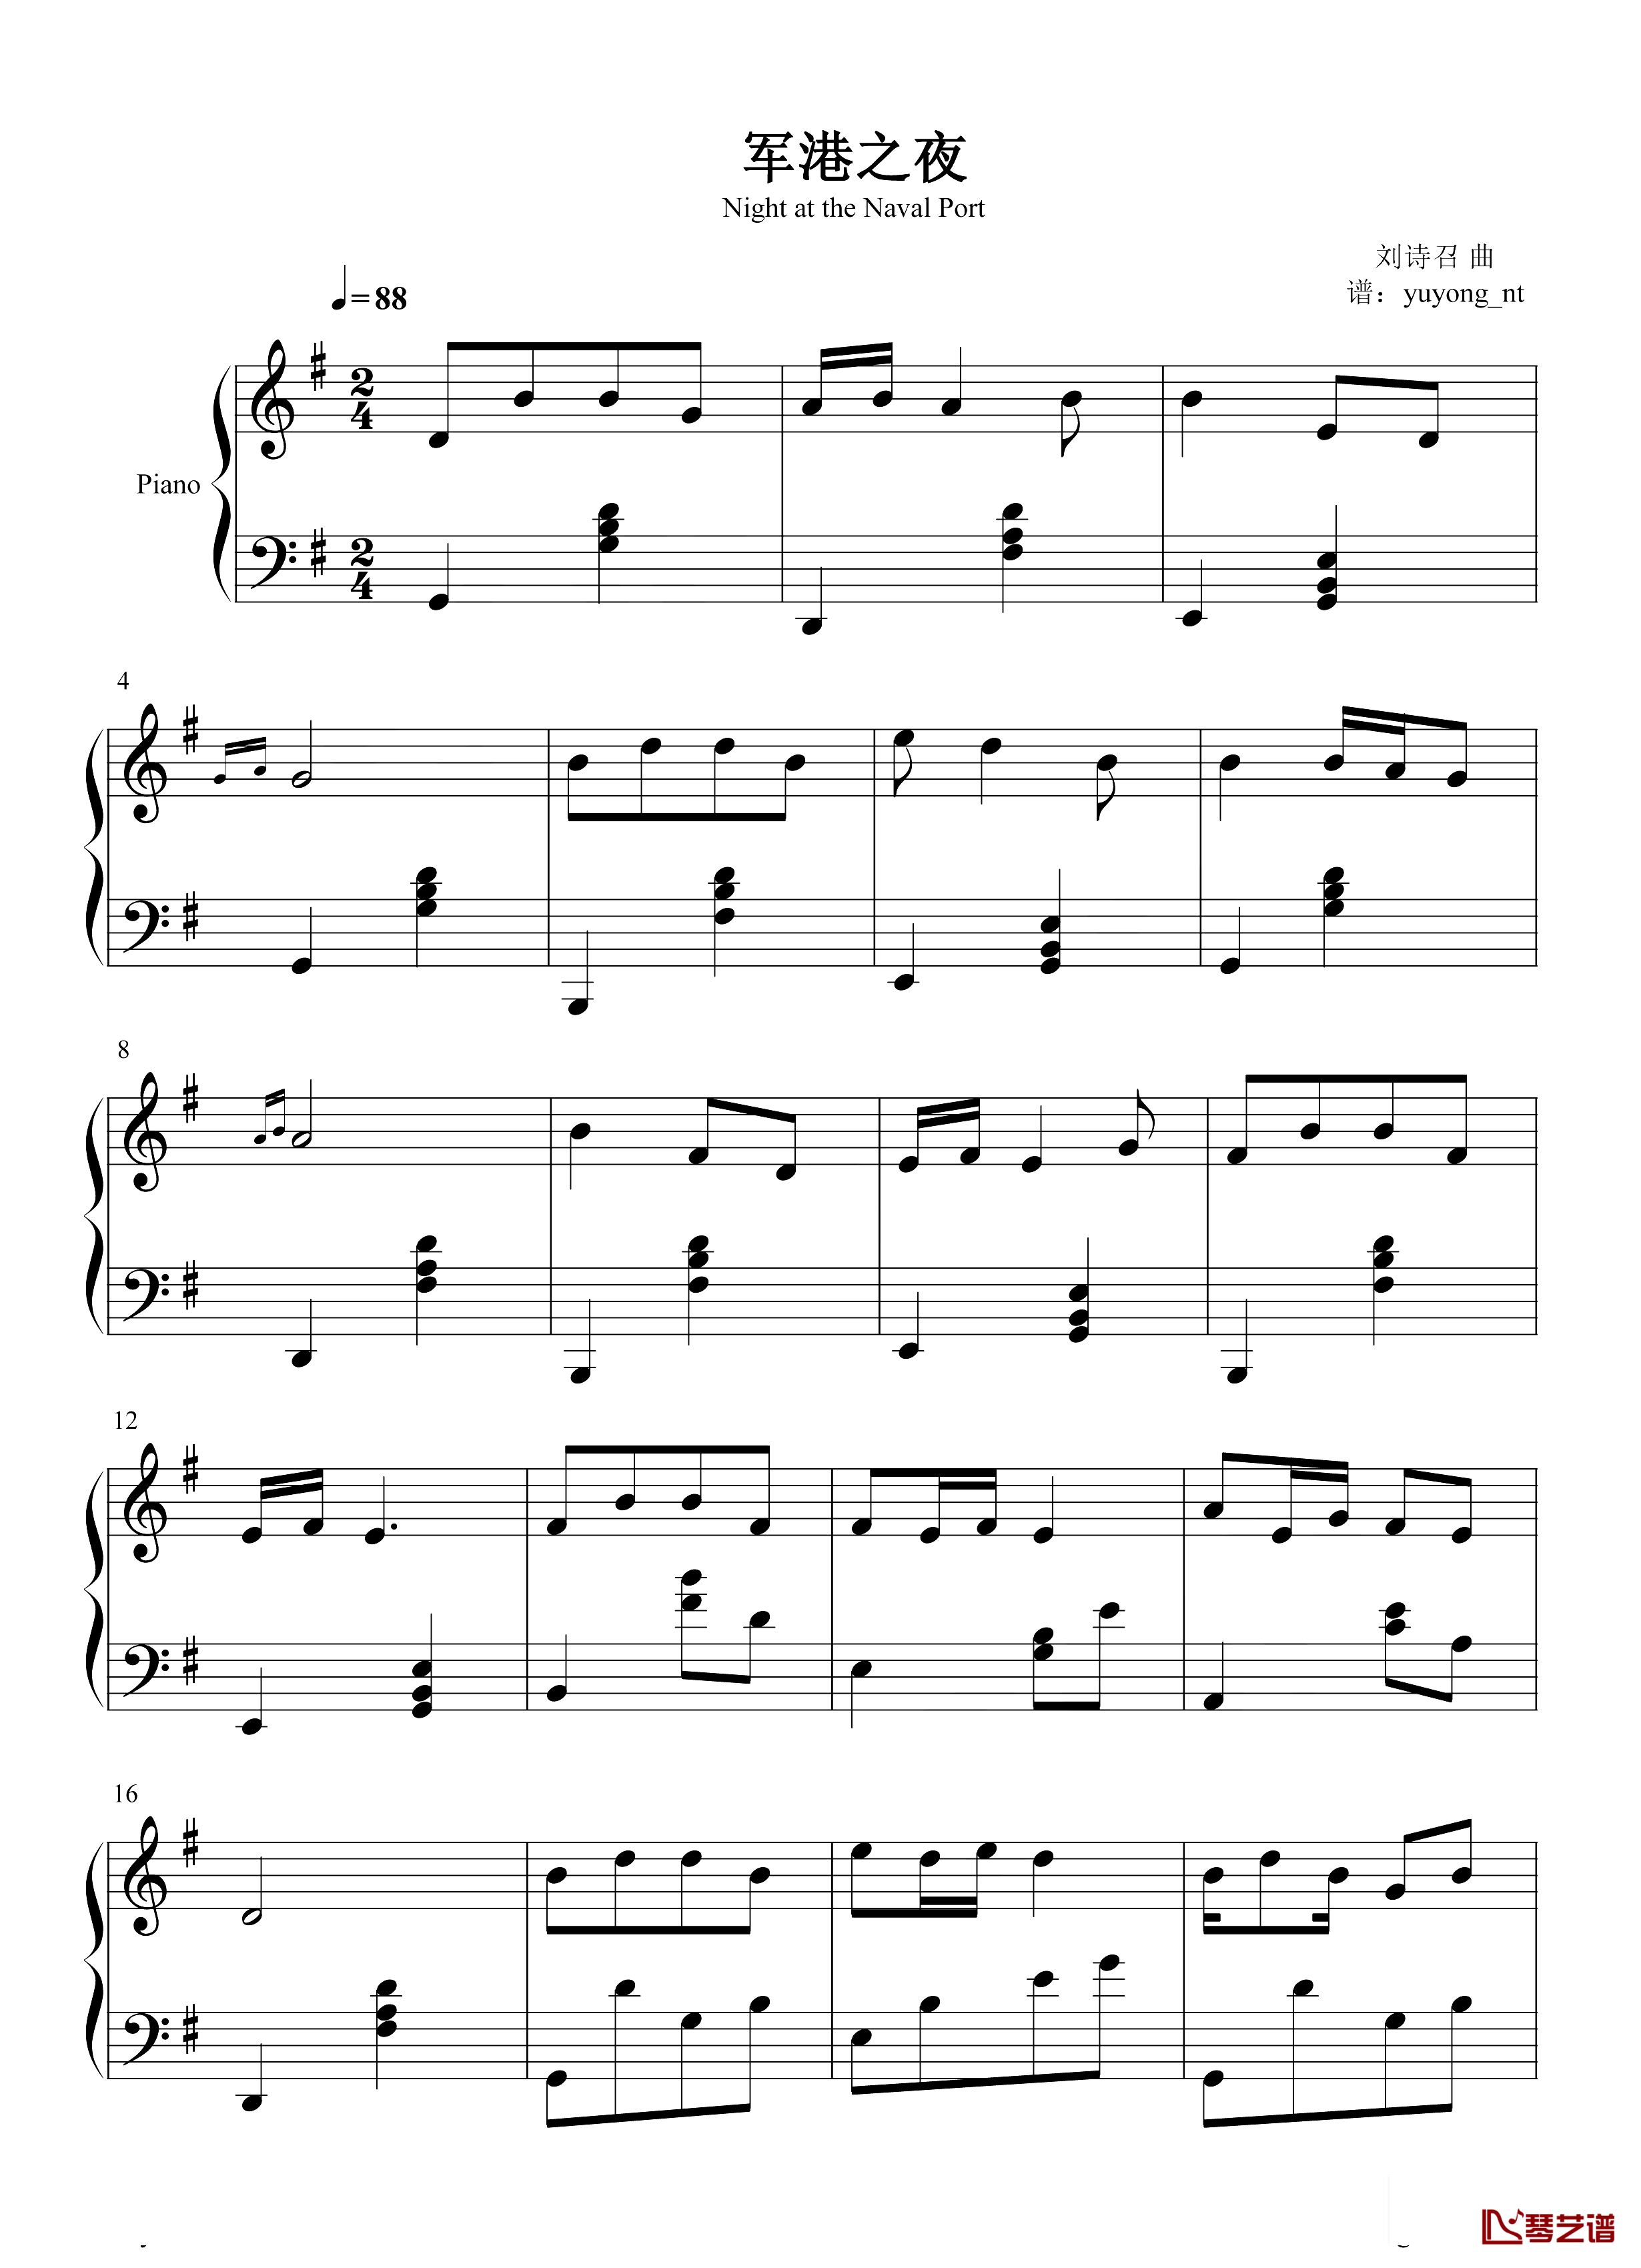 军港之夜钢琴谱-简单版-苏小明-中国军旅歌曲的海军经典代表曲目1